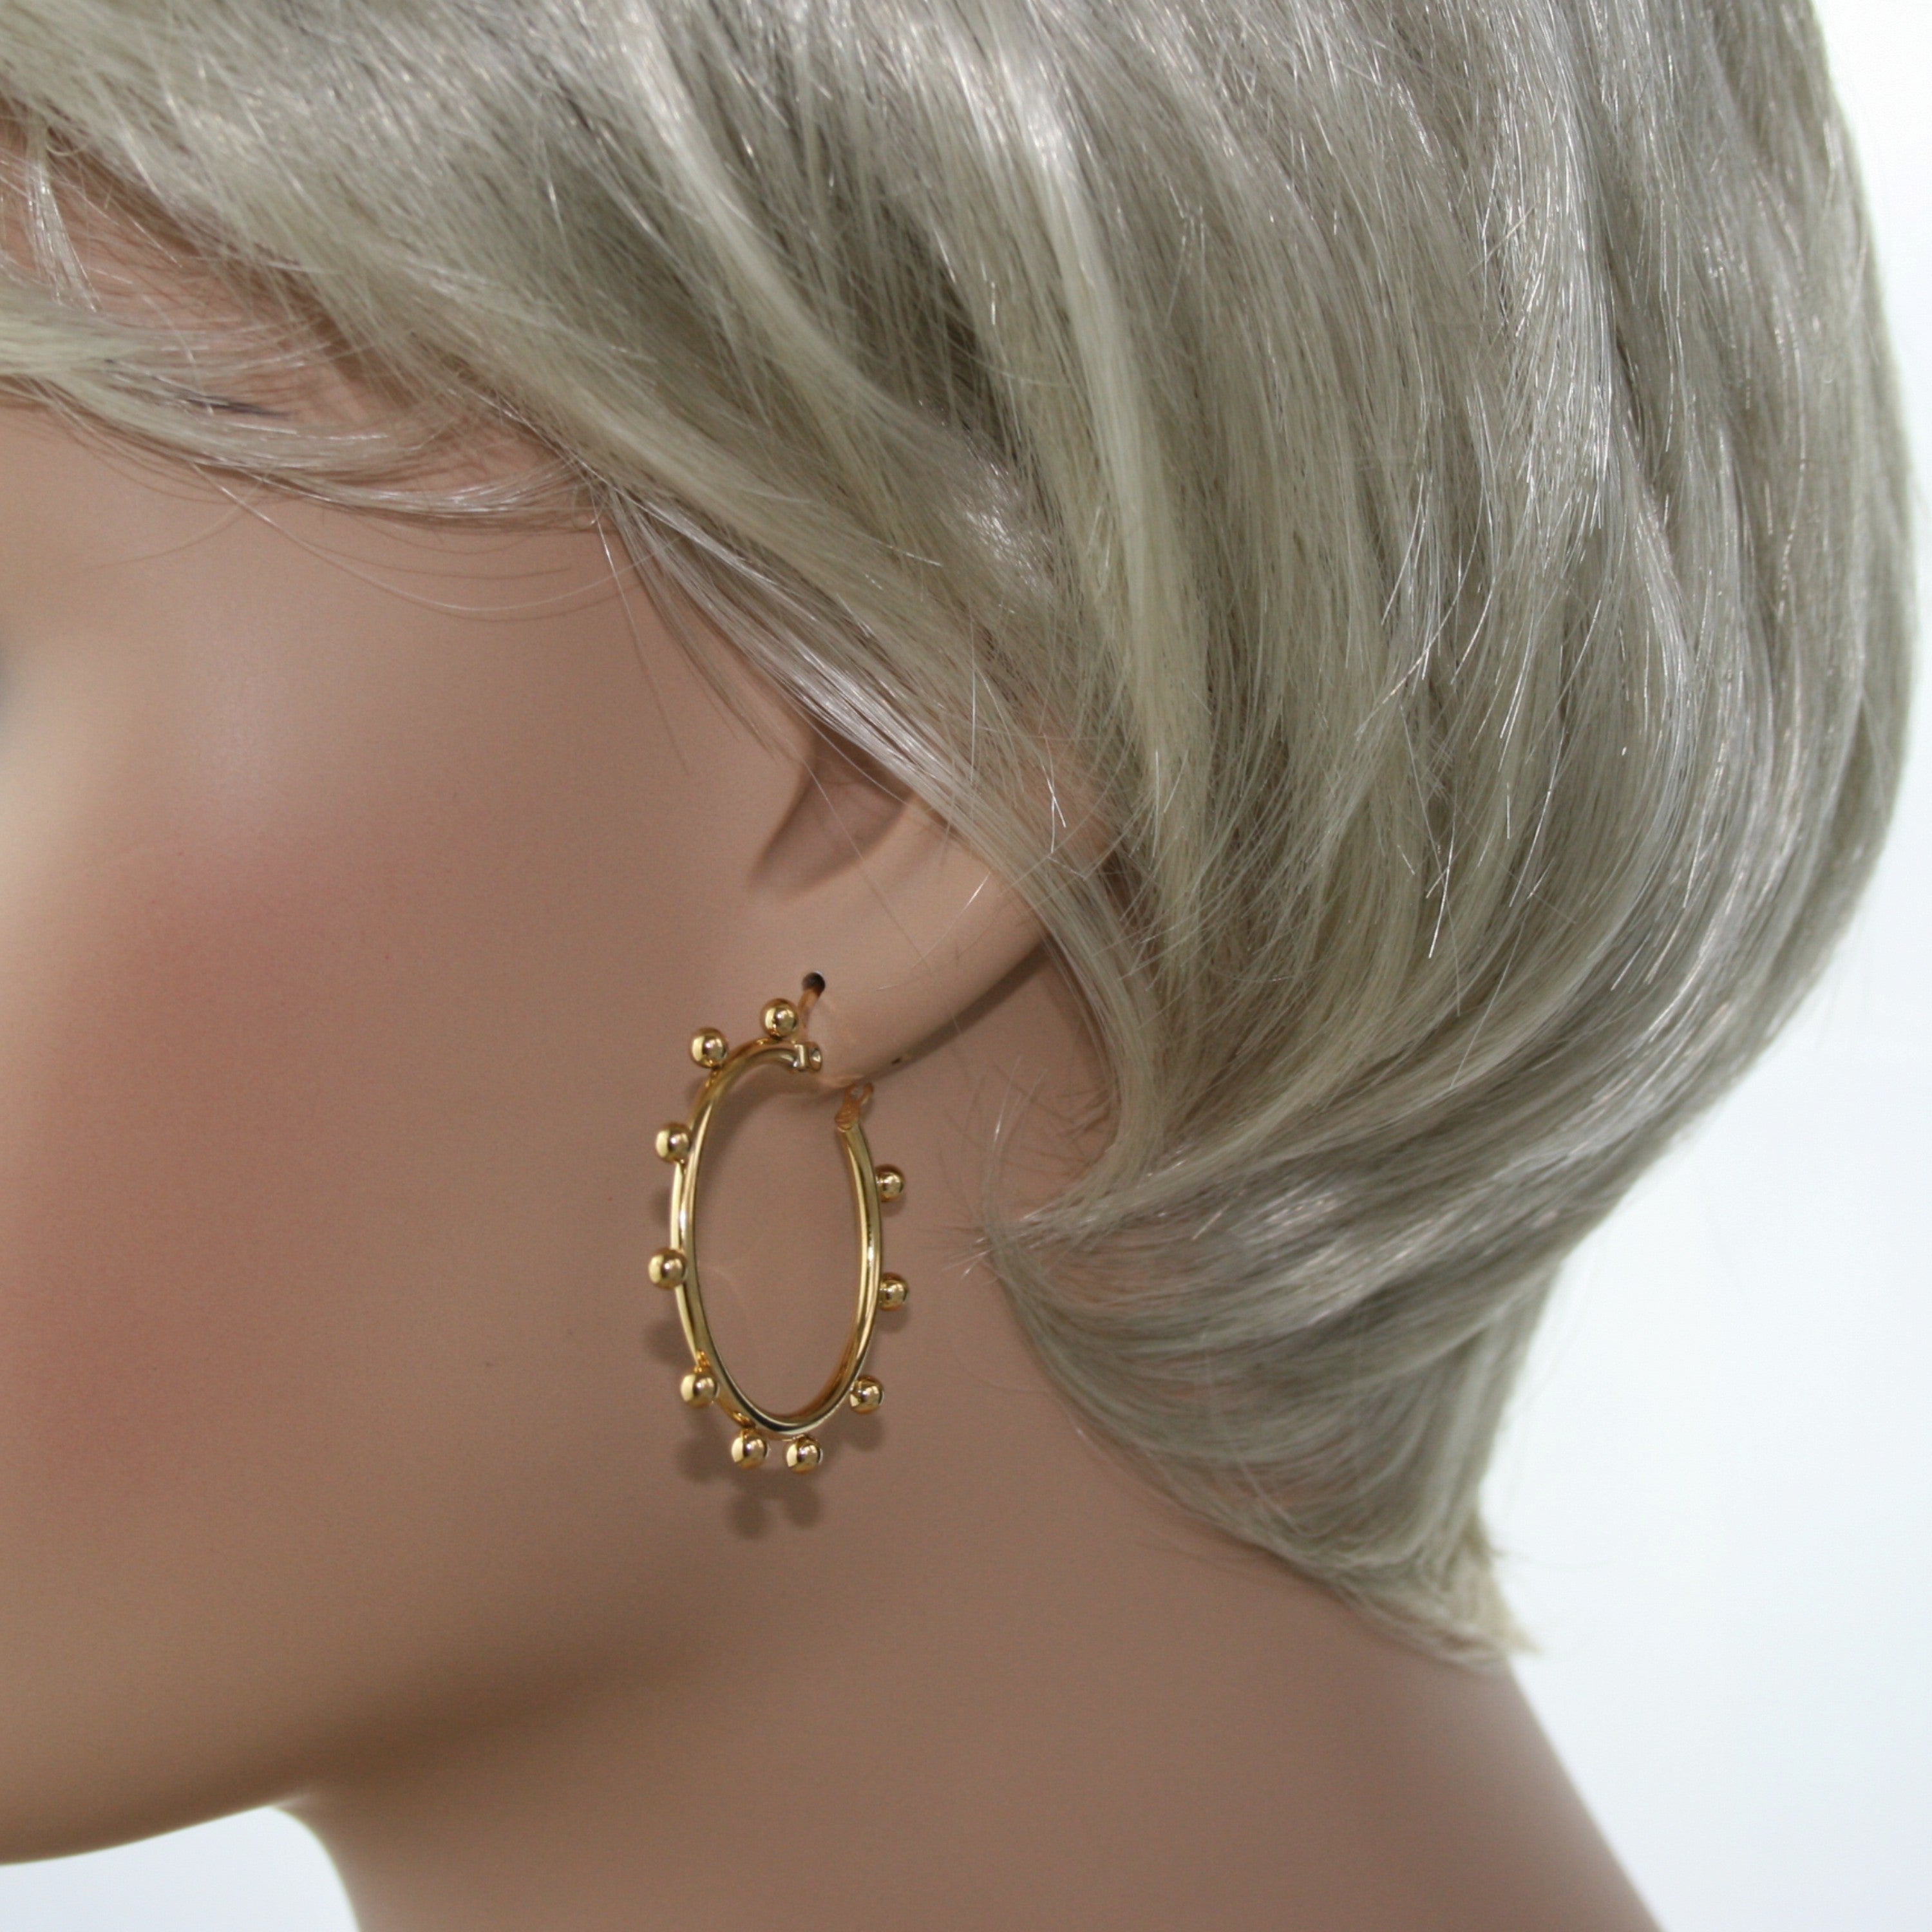 Stainless Steel Gold Tone Boho Beaded Hoop Earrings